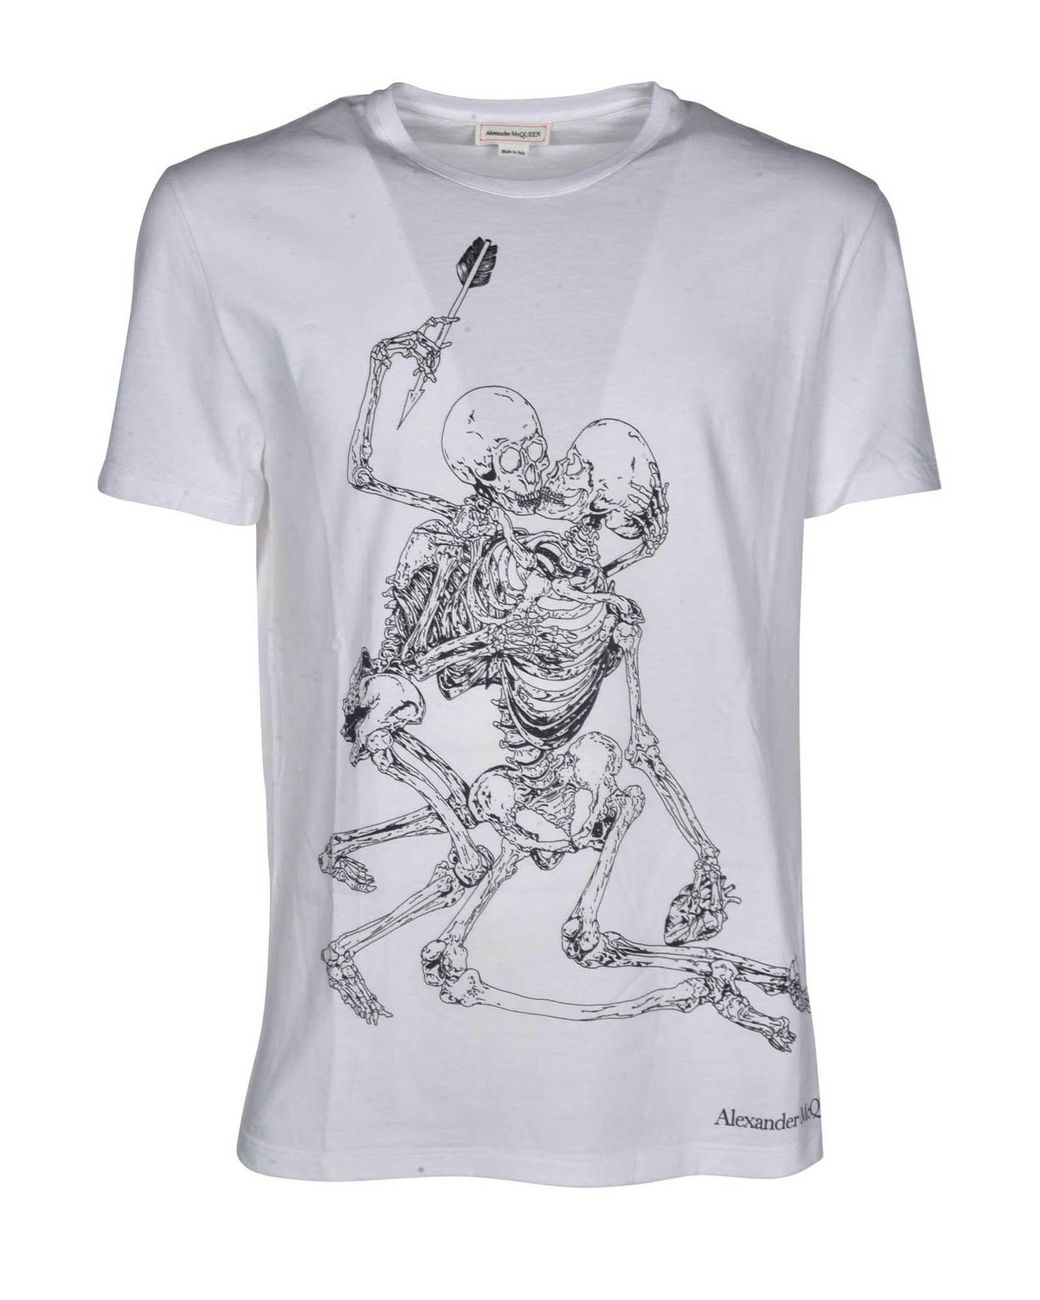 Alexander McQueen Cotton Lovers Skeleton T-shirt in White for Men - Lyst